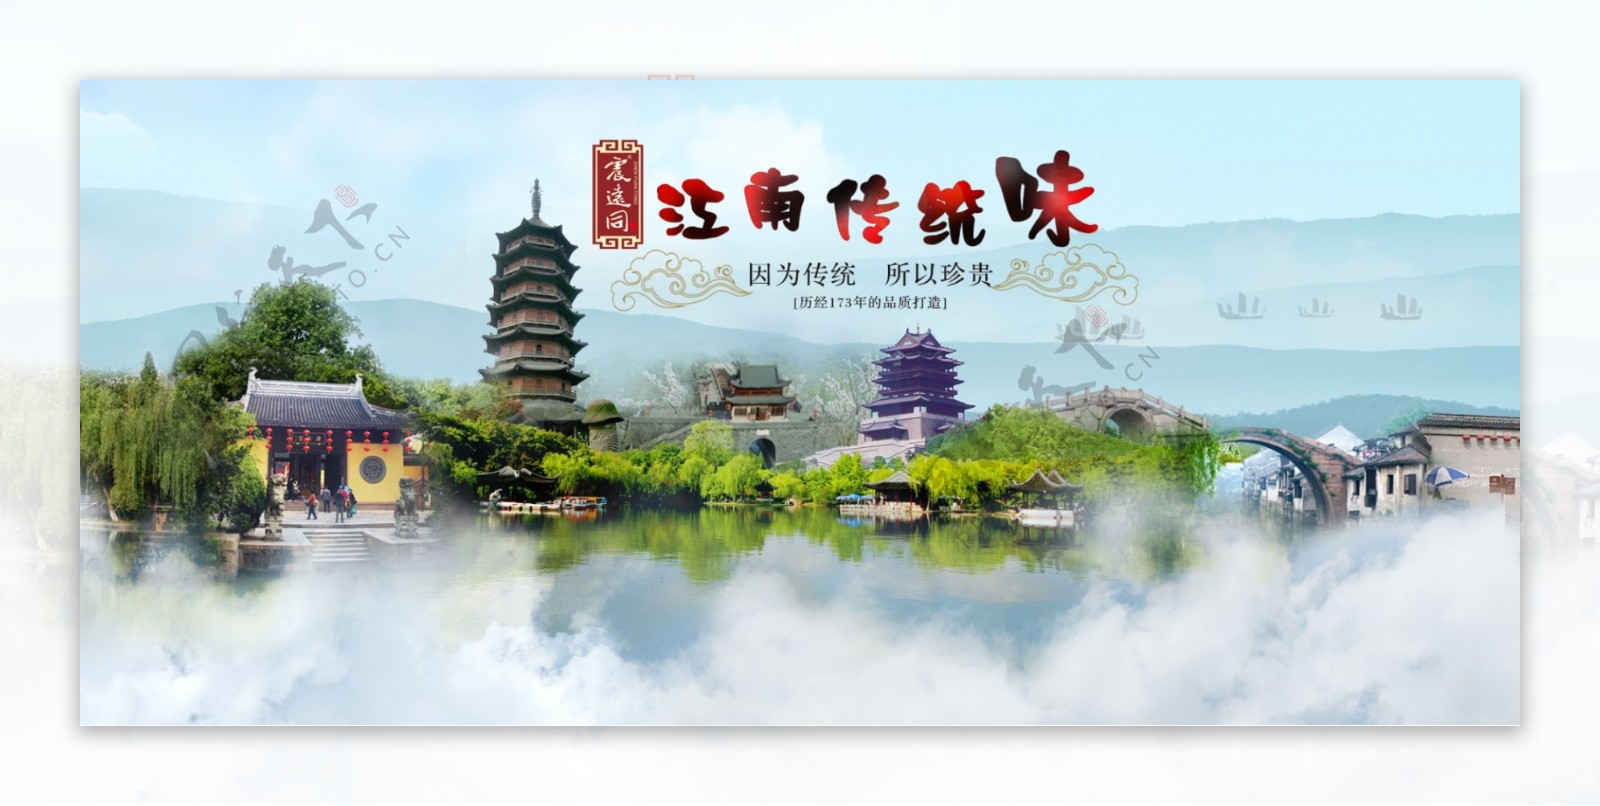 江南湖州风景图片